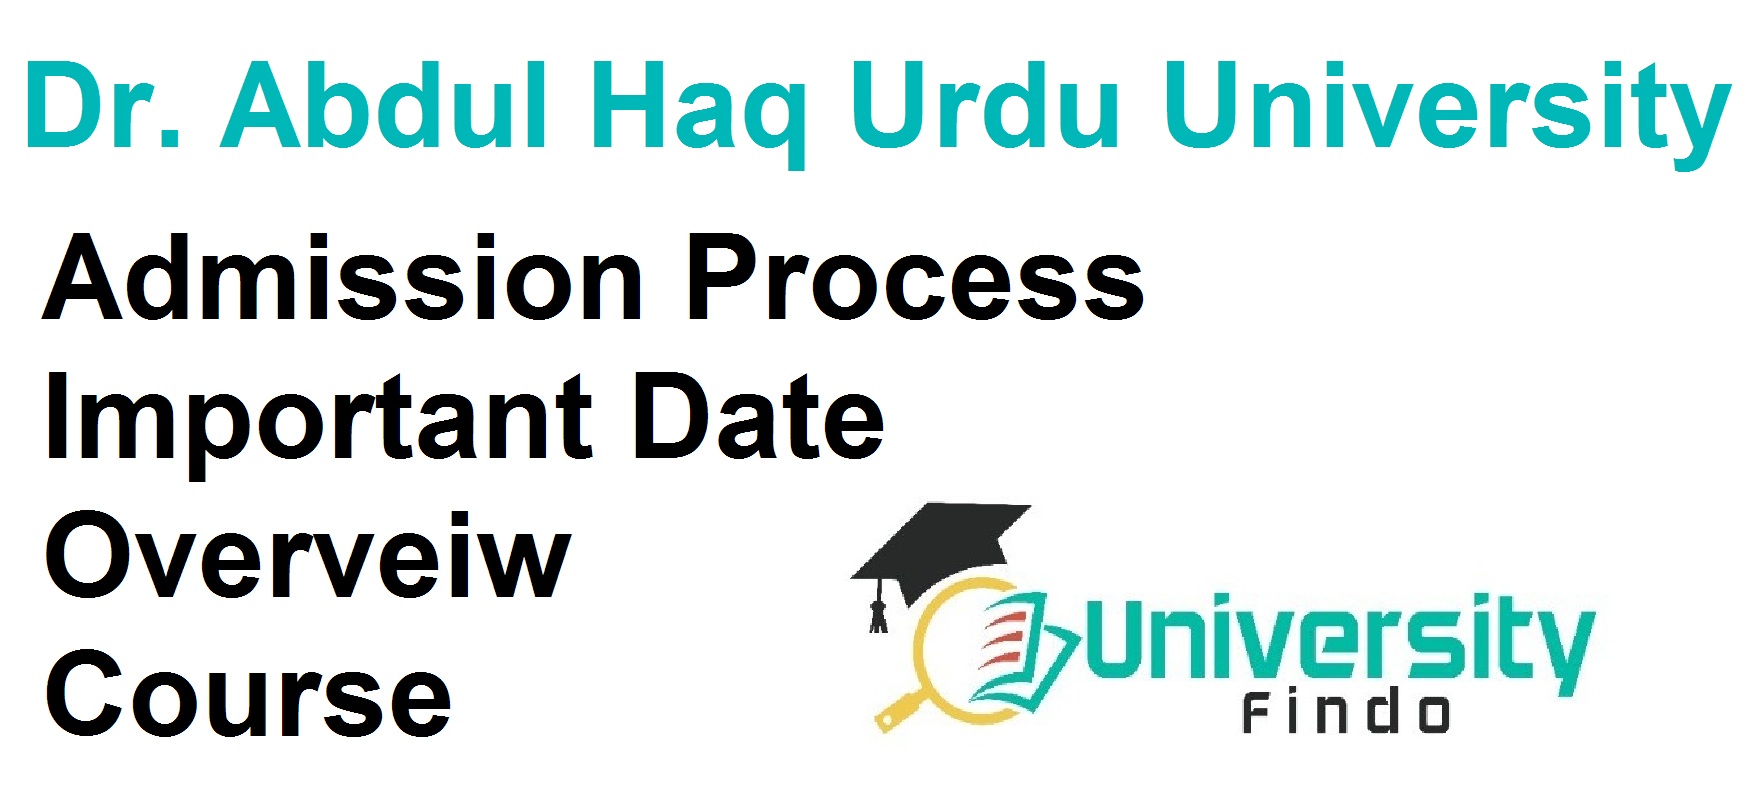 Dr. Abdul Haq Urdu University Admission